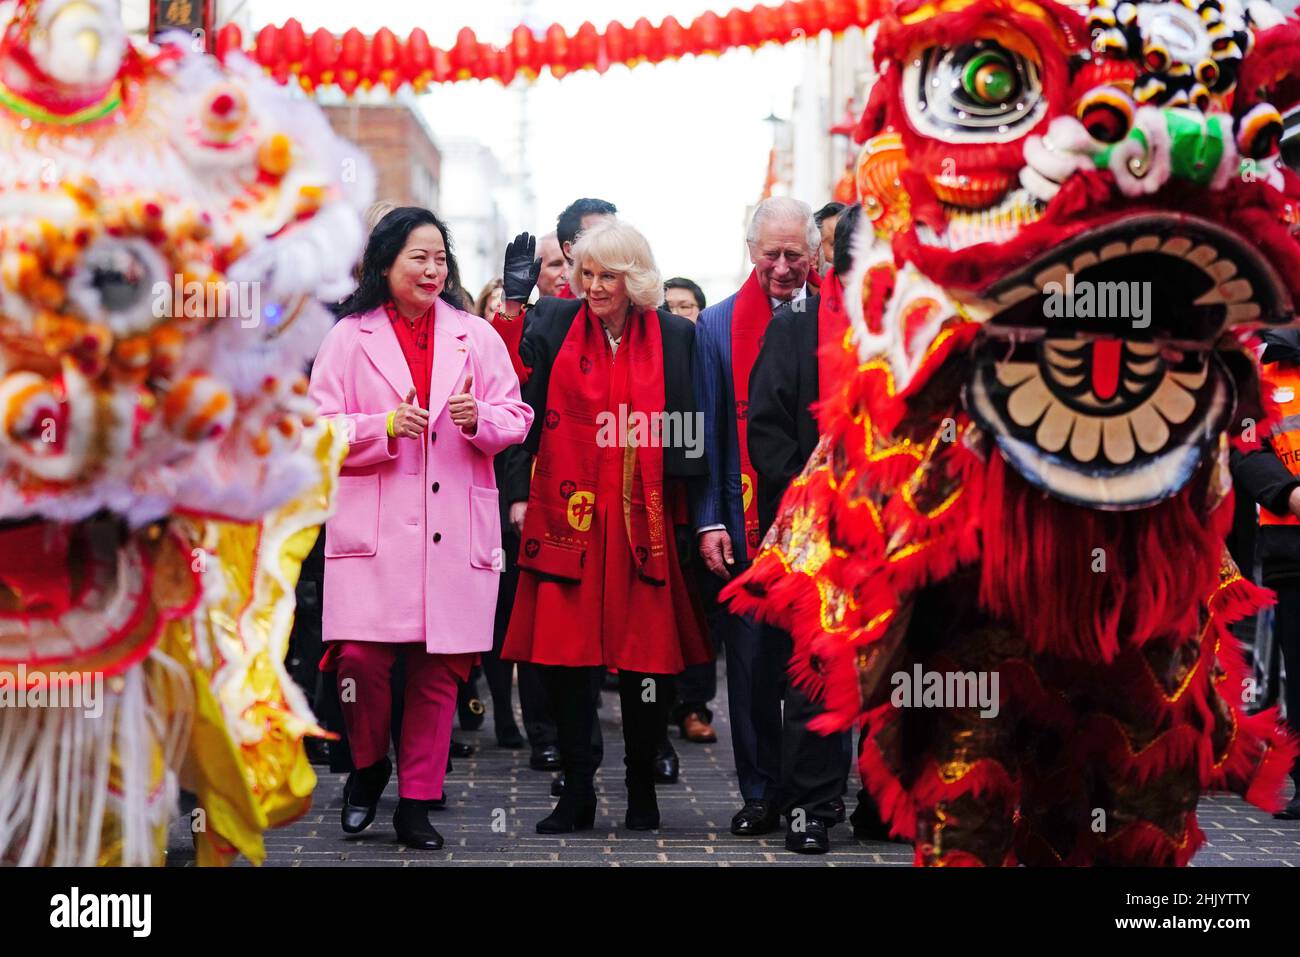 Le prince de Galles et la duchesse de Cornwall dans le quartier chinois de Londres pour célébrer le nouvel an lunaire.Date de la photo: Mardi 1 février 2022. Banque D'Images